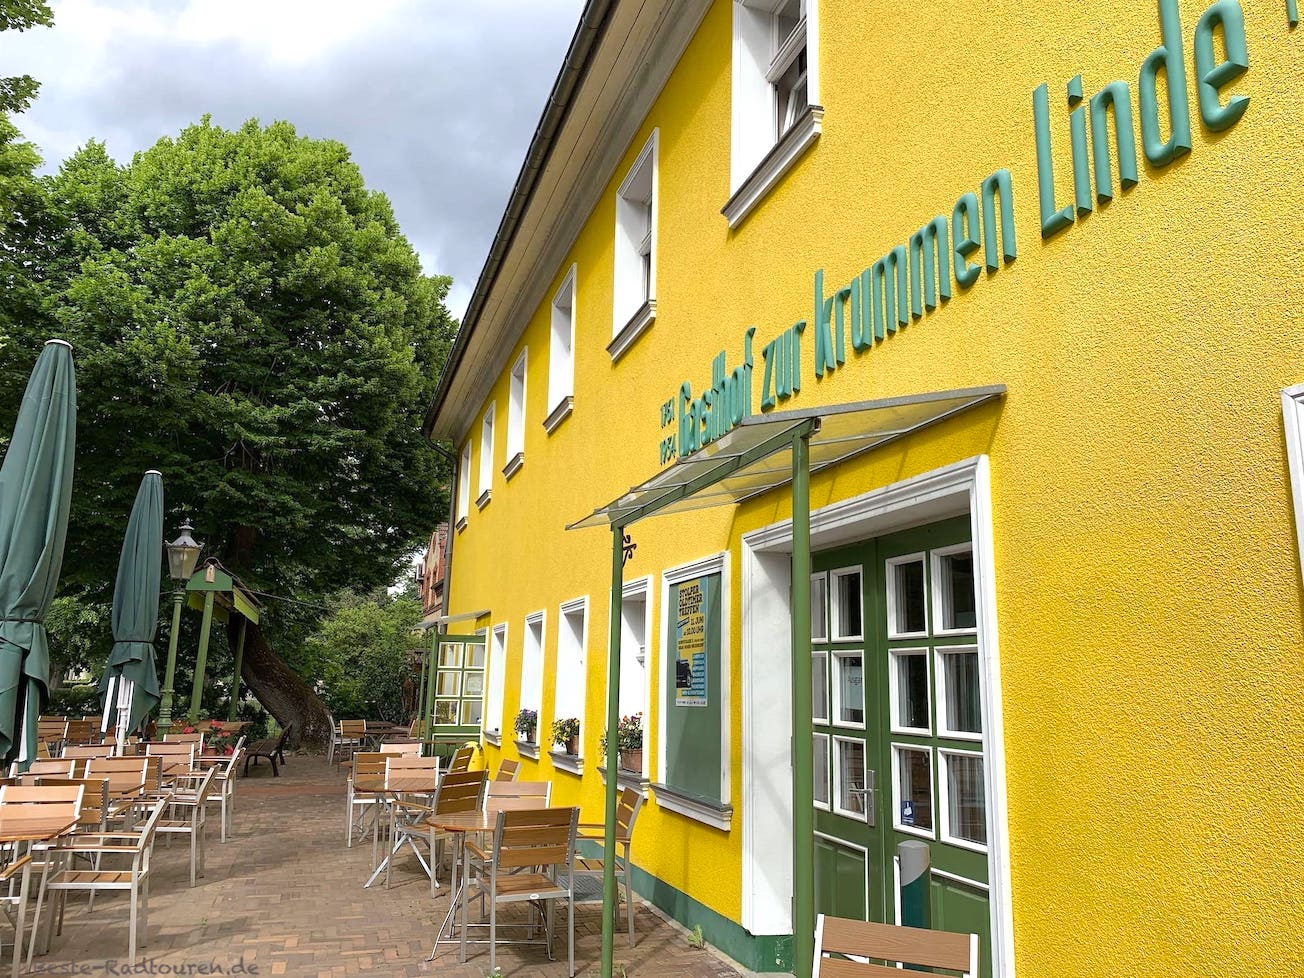 Gasthof zur Krummen Linde, Stolpe (Gemeinde Hennigsdorf), Foto von der Seite